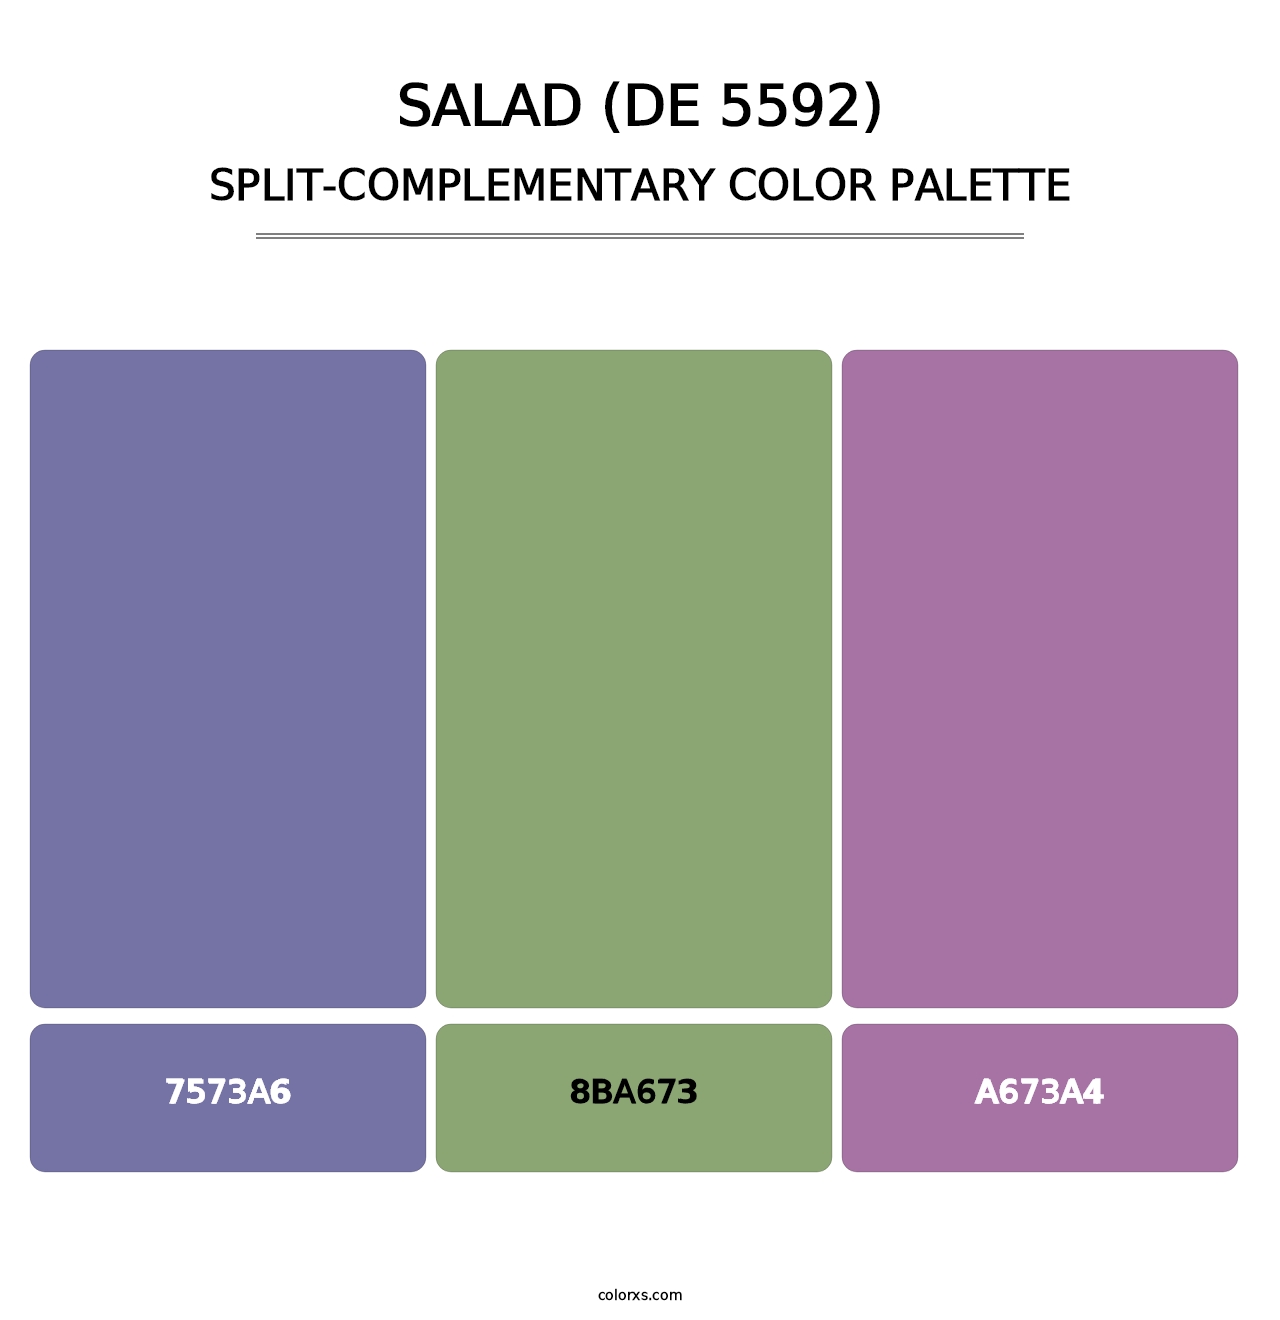 Salad (DE 5592) - Split-Complementary Color Palette